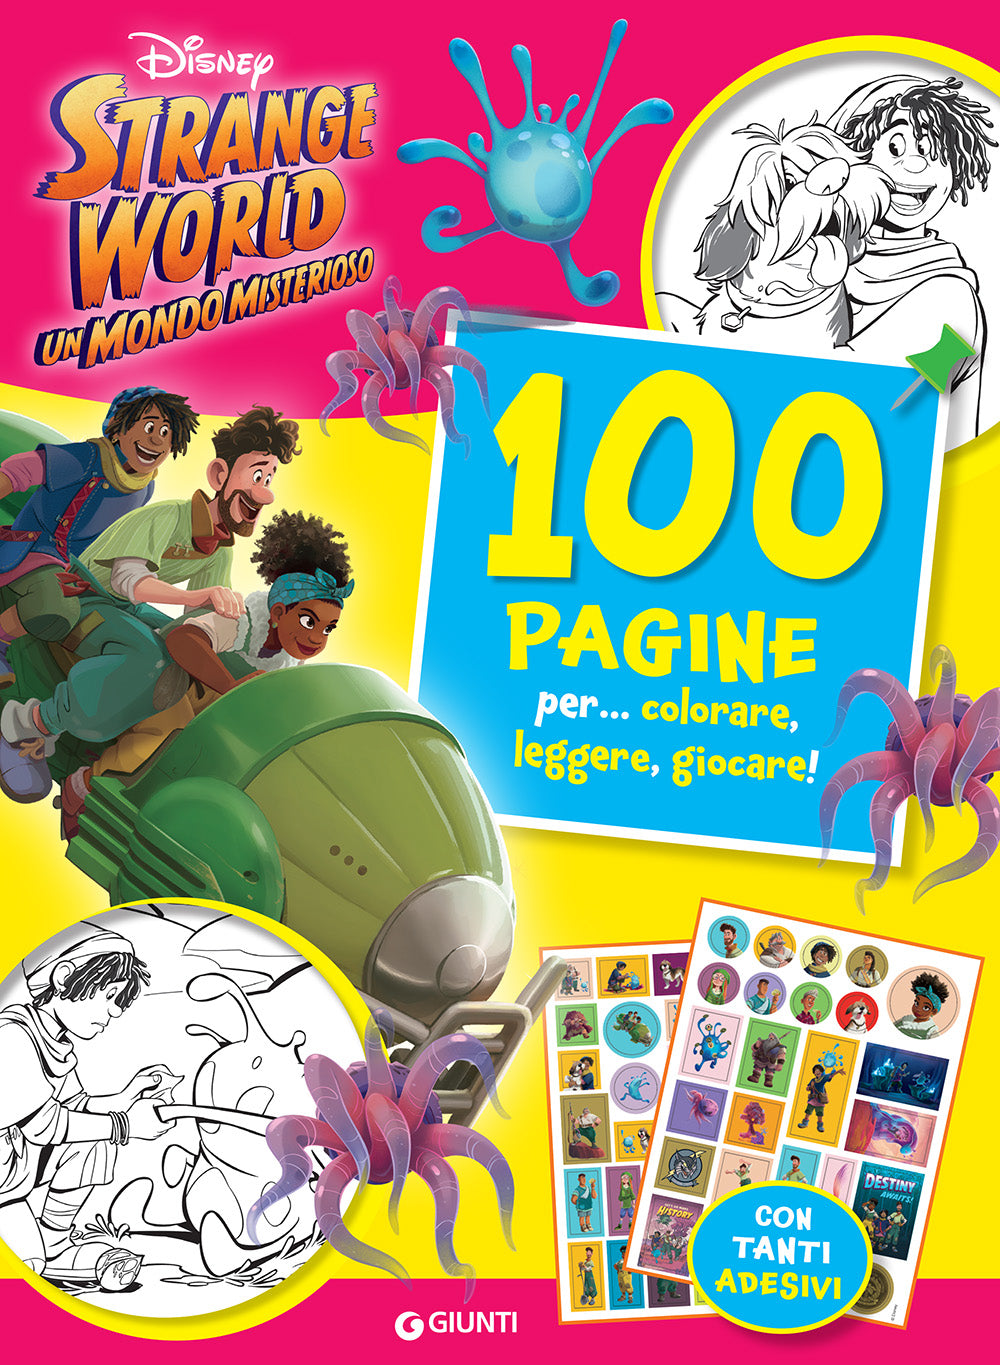 Strange World 100 Pagine per colorare, leggere, giocare::Un mondo misterioso